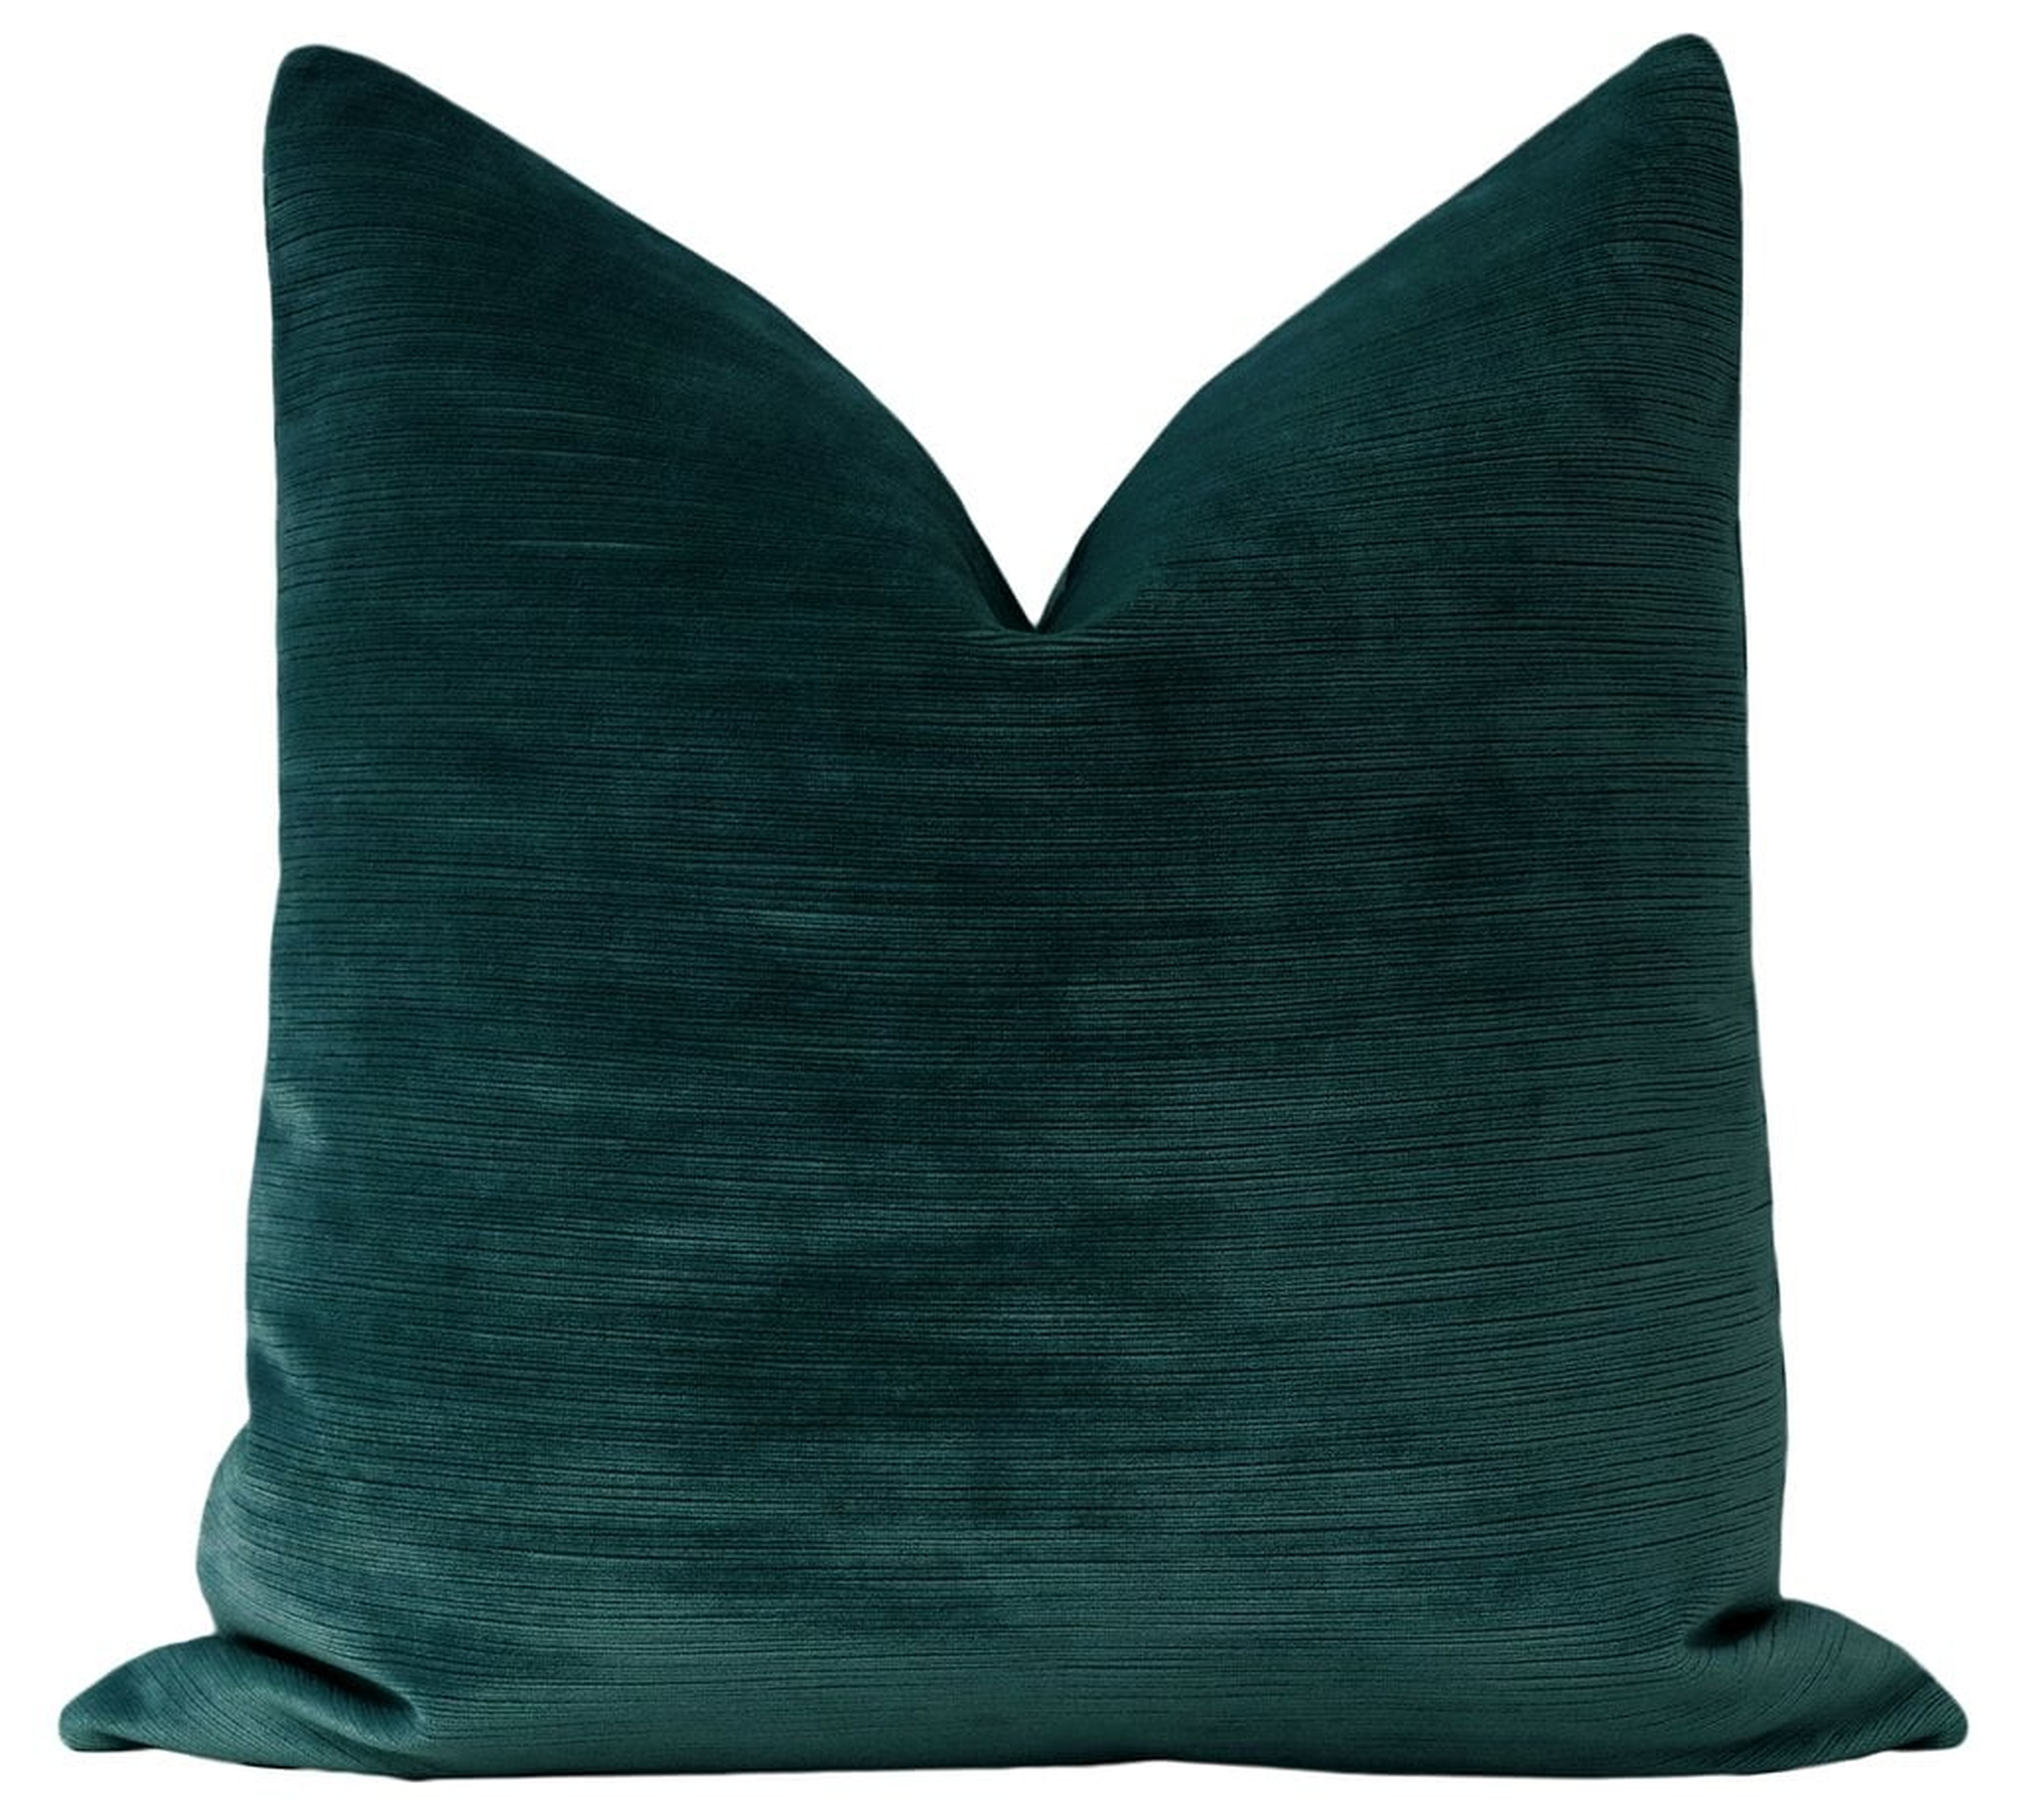 Strie Velvet Pillow Cover, Harbour Blue, 20" x 20" - Little Design Company